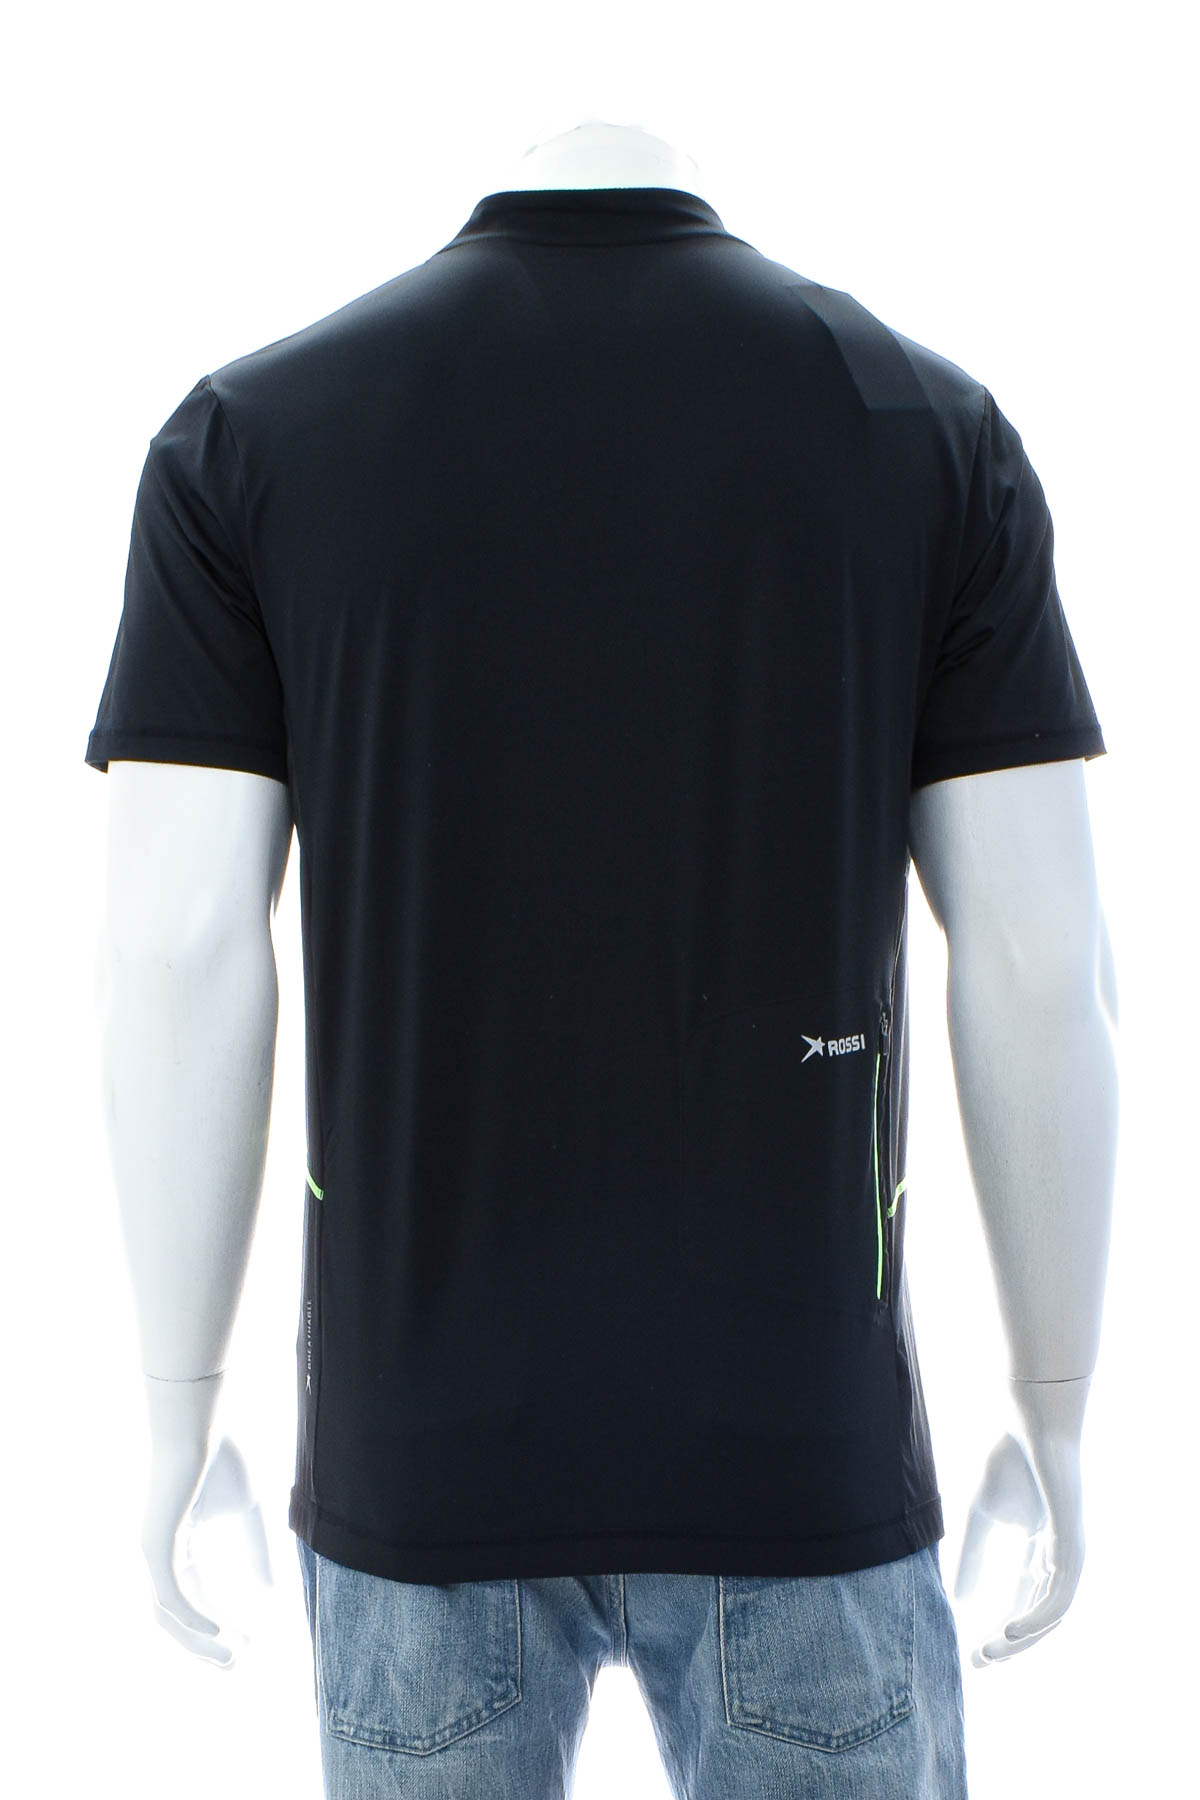 Αντρική μπλούζα Για ποδηλασία - Rossi - 1